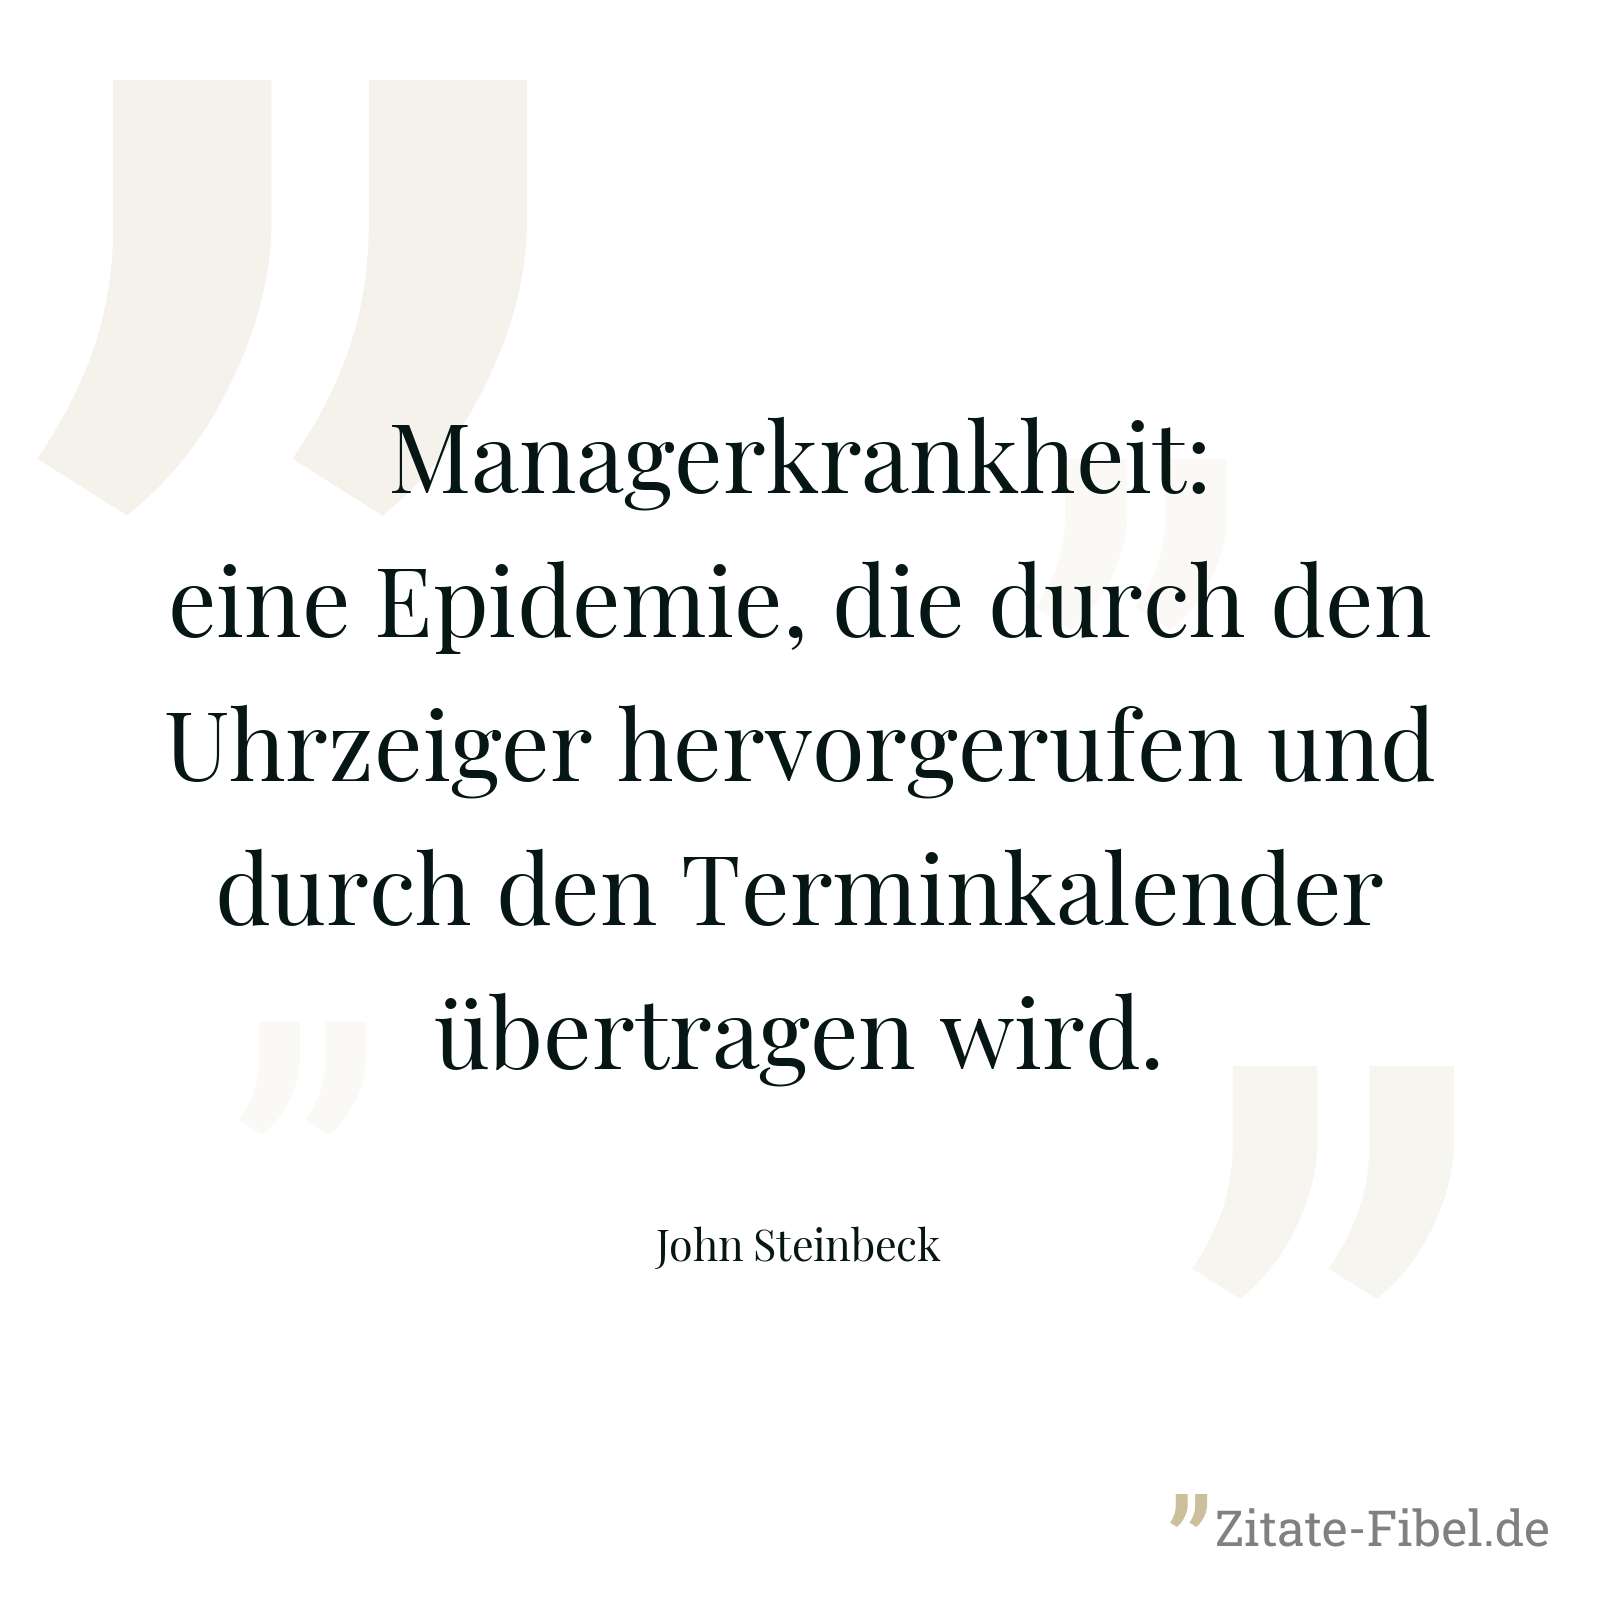 Managerkrankheit: eine Epidemie, die durch den Uhrzeiger hervorgerufen und durch den Terminkalender übertragen wird. - John Steinbeck